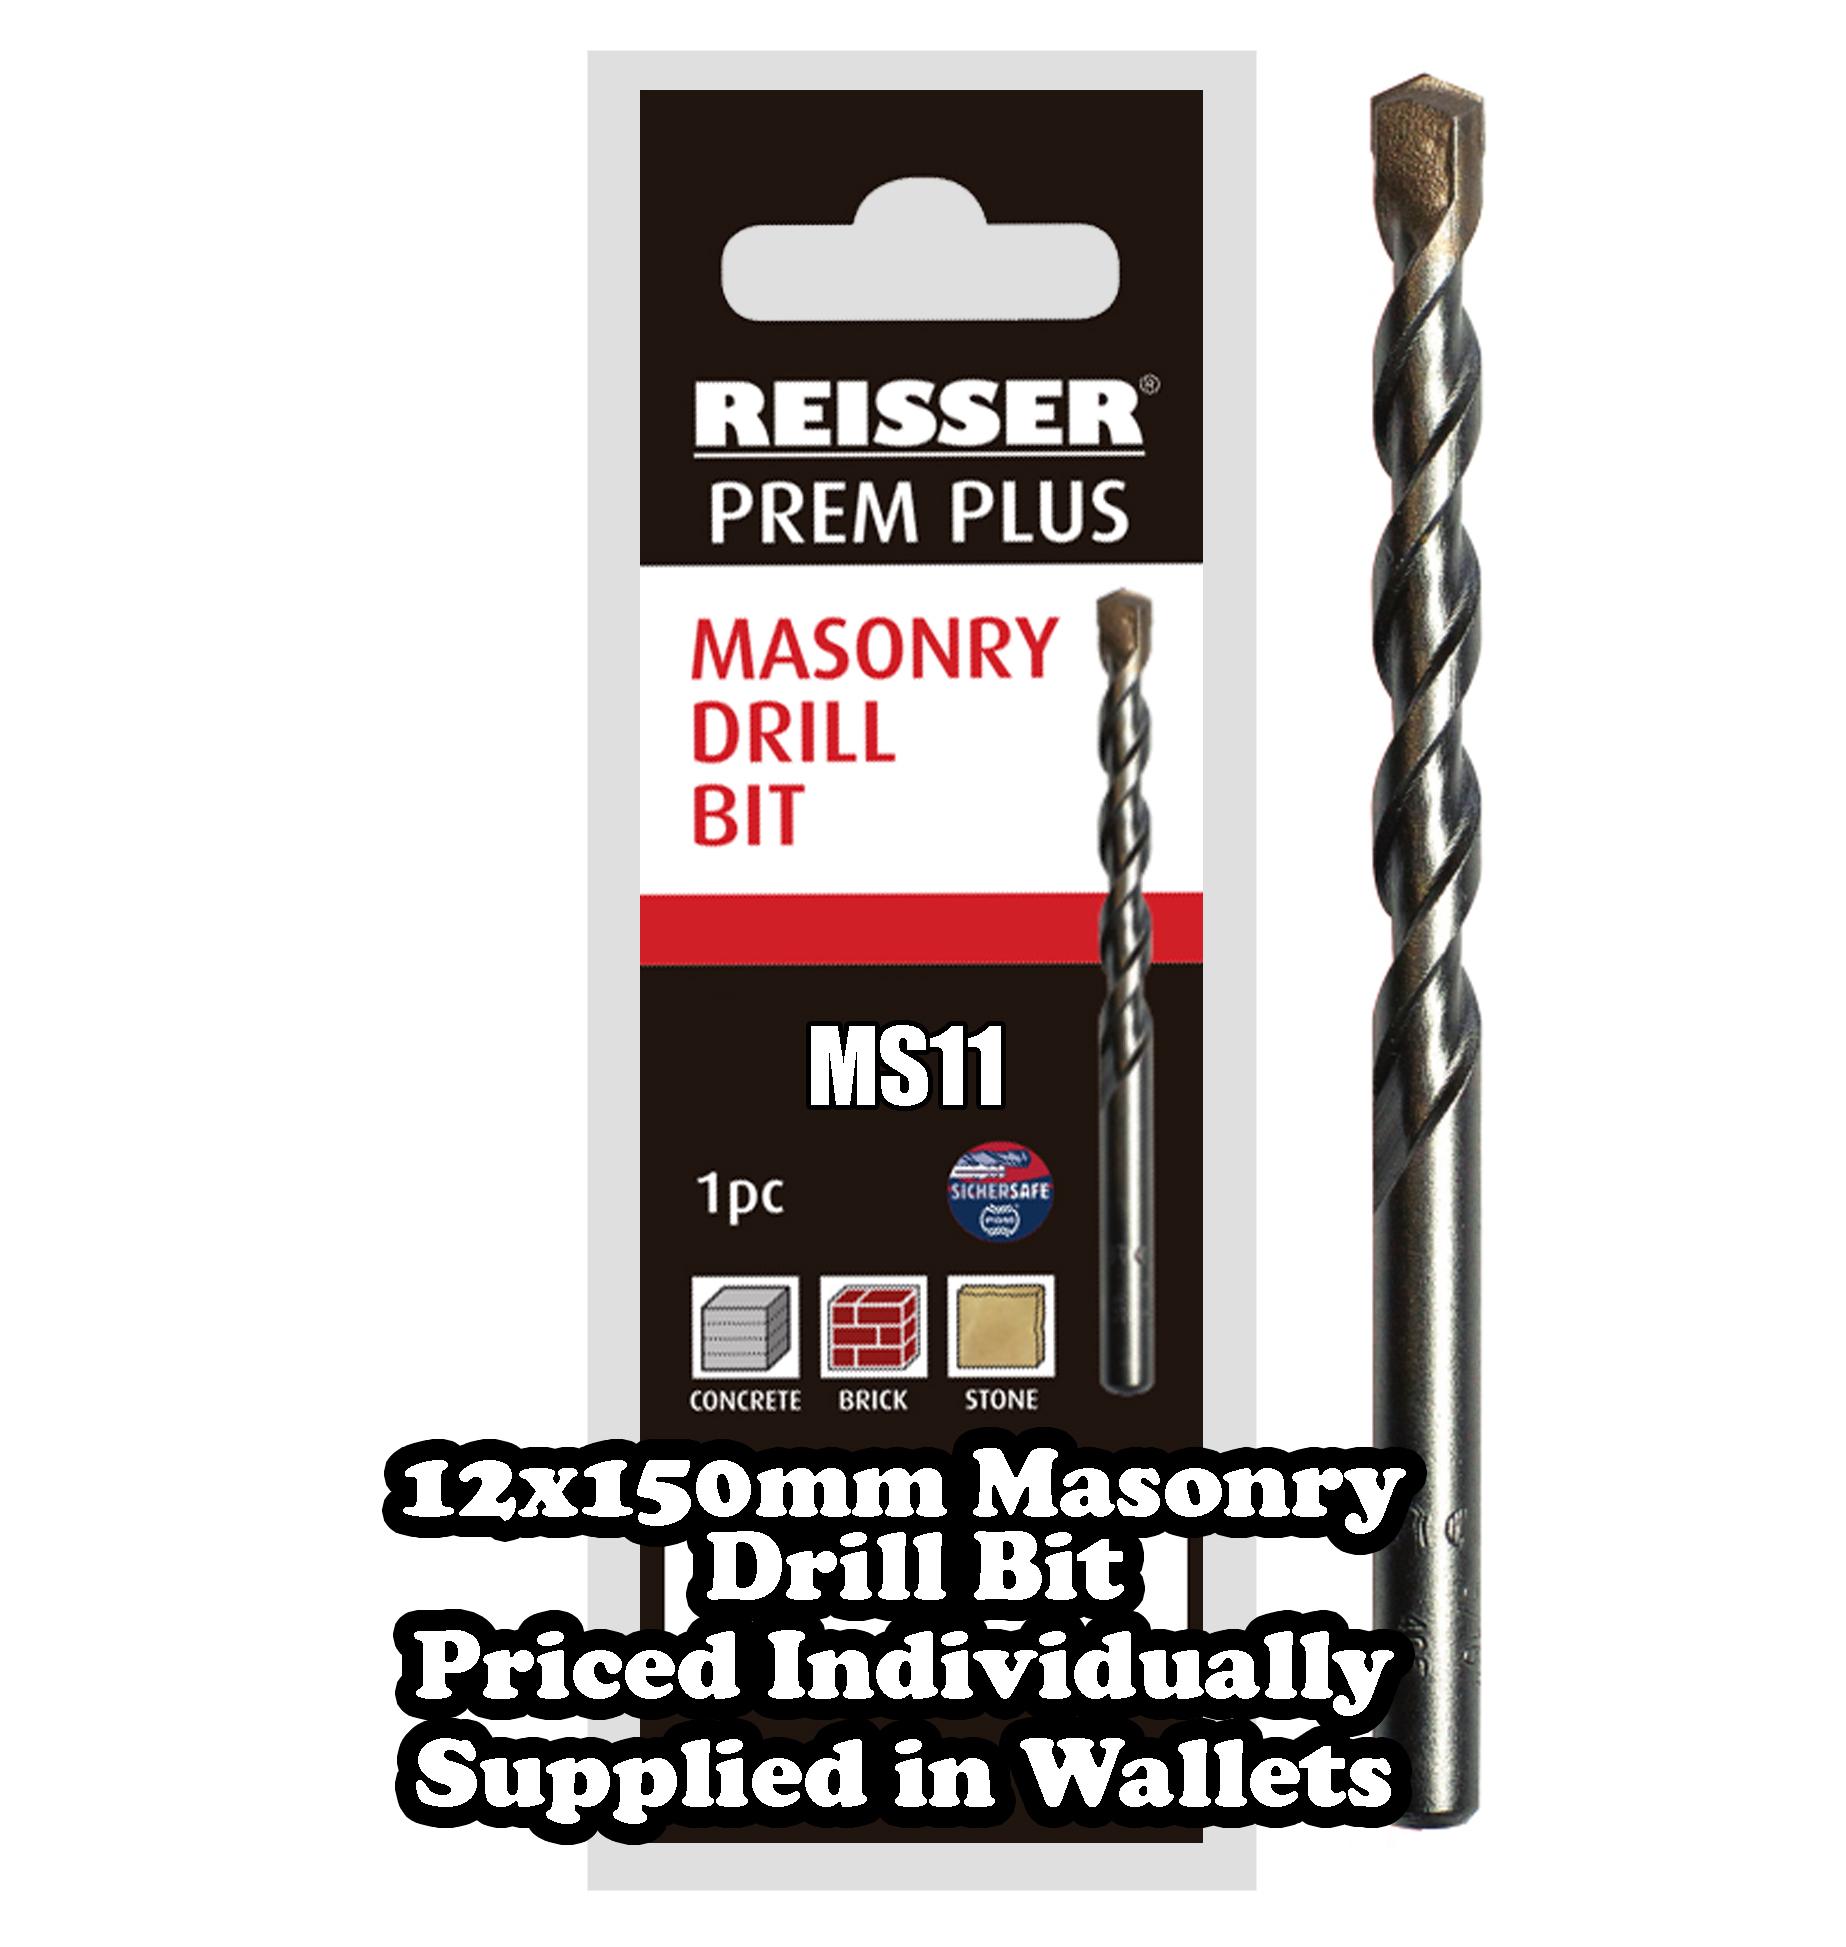 12mm x 150mm Masonry Drill Bit